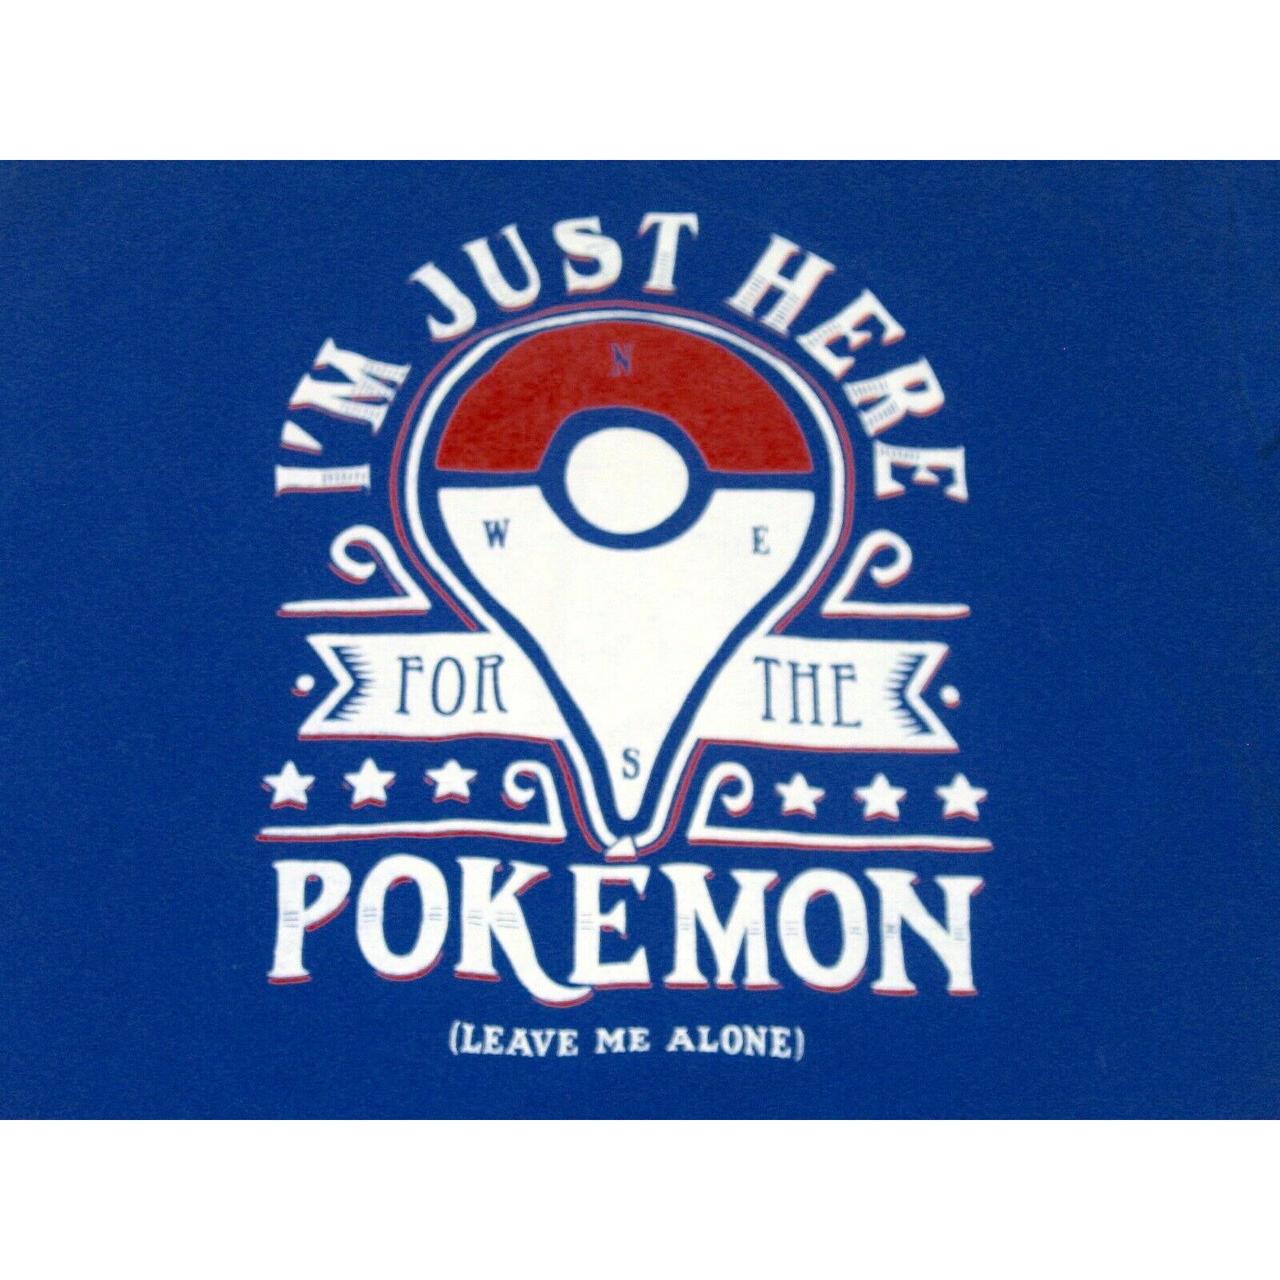 Product Image 2 - Pokemon Adult Blue T-Shirt Size